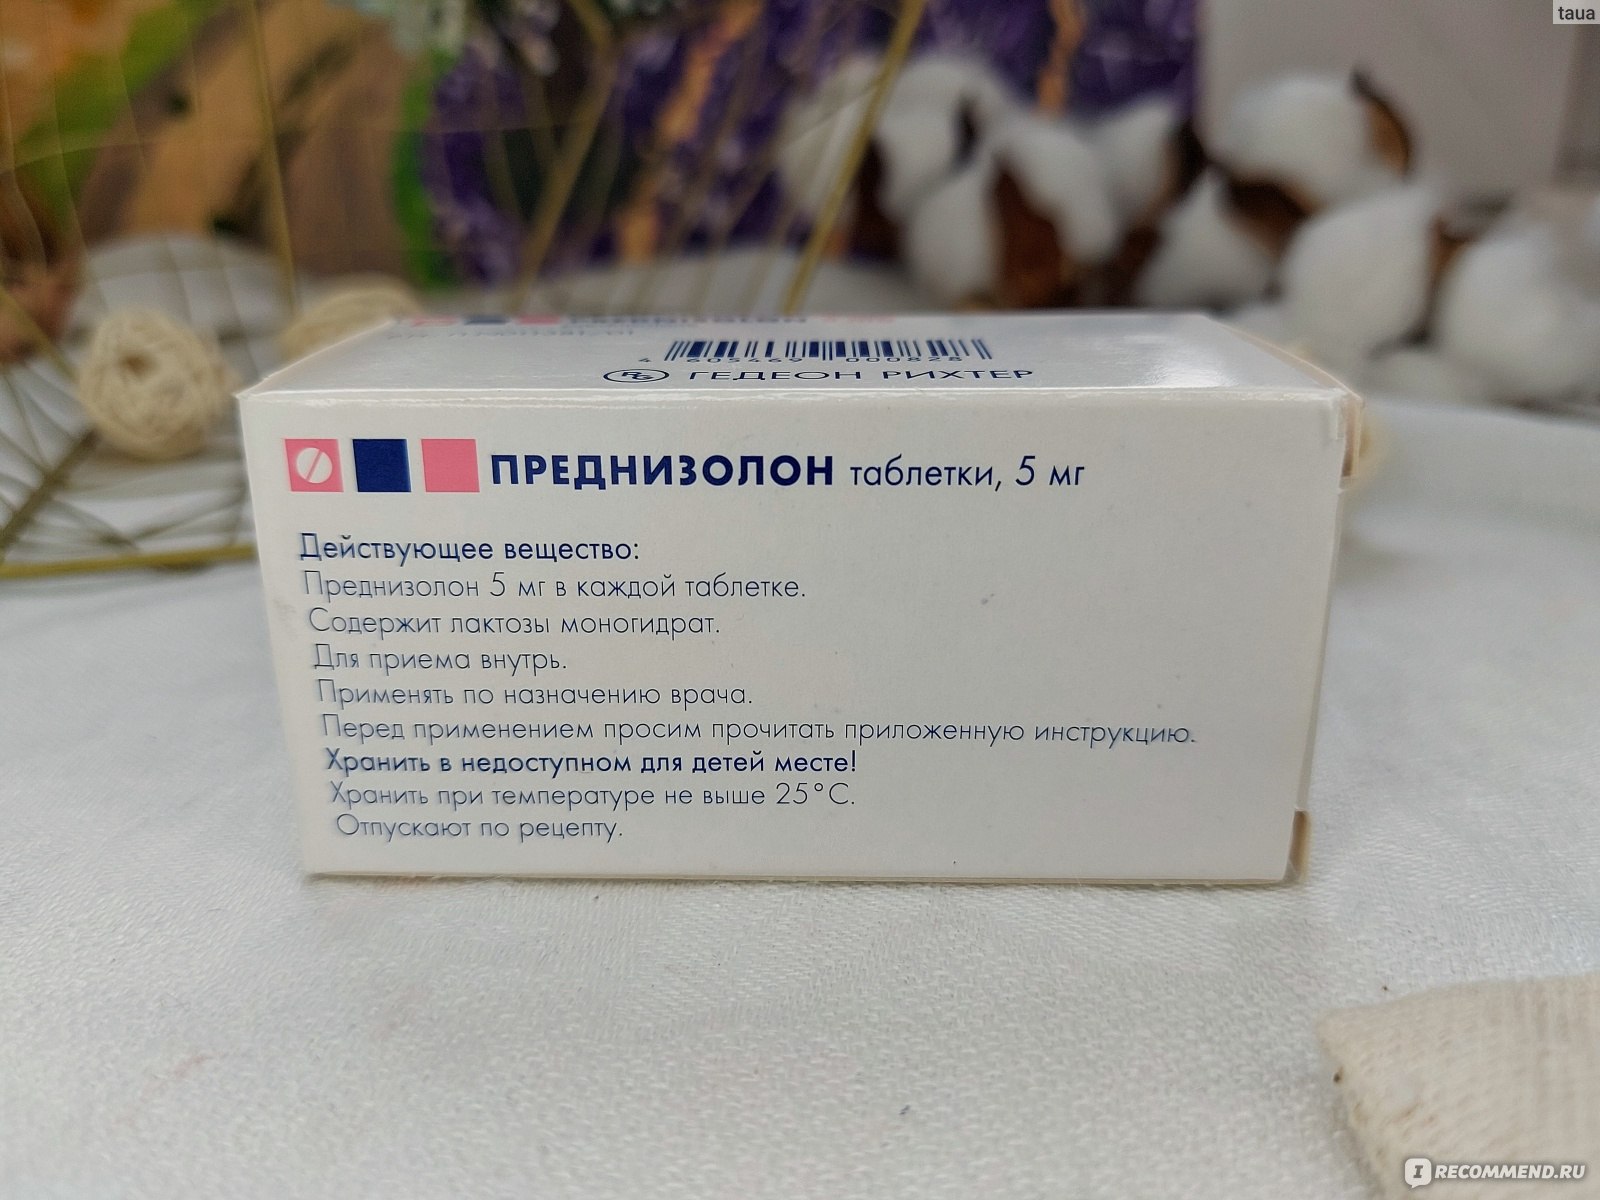 Гормональные препараты преднизолон - «Преднизолон - экстренная помощь .